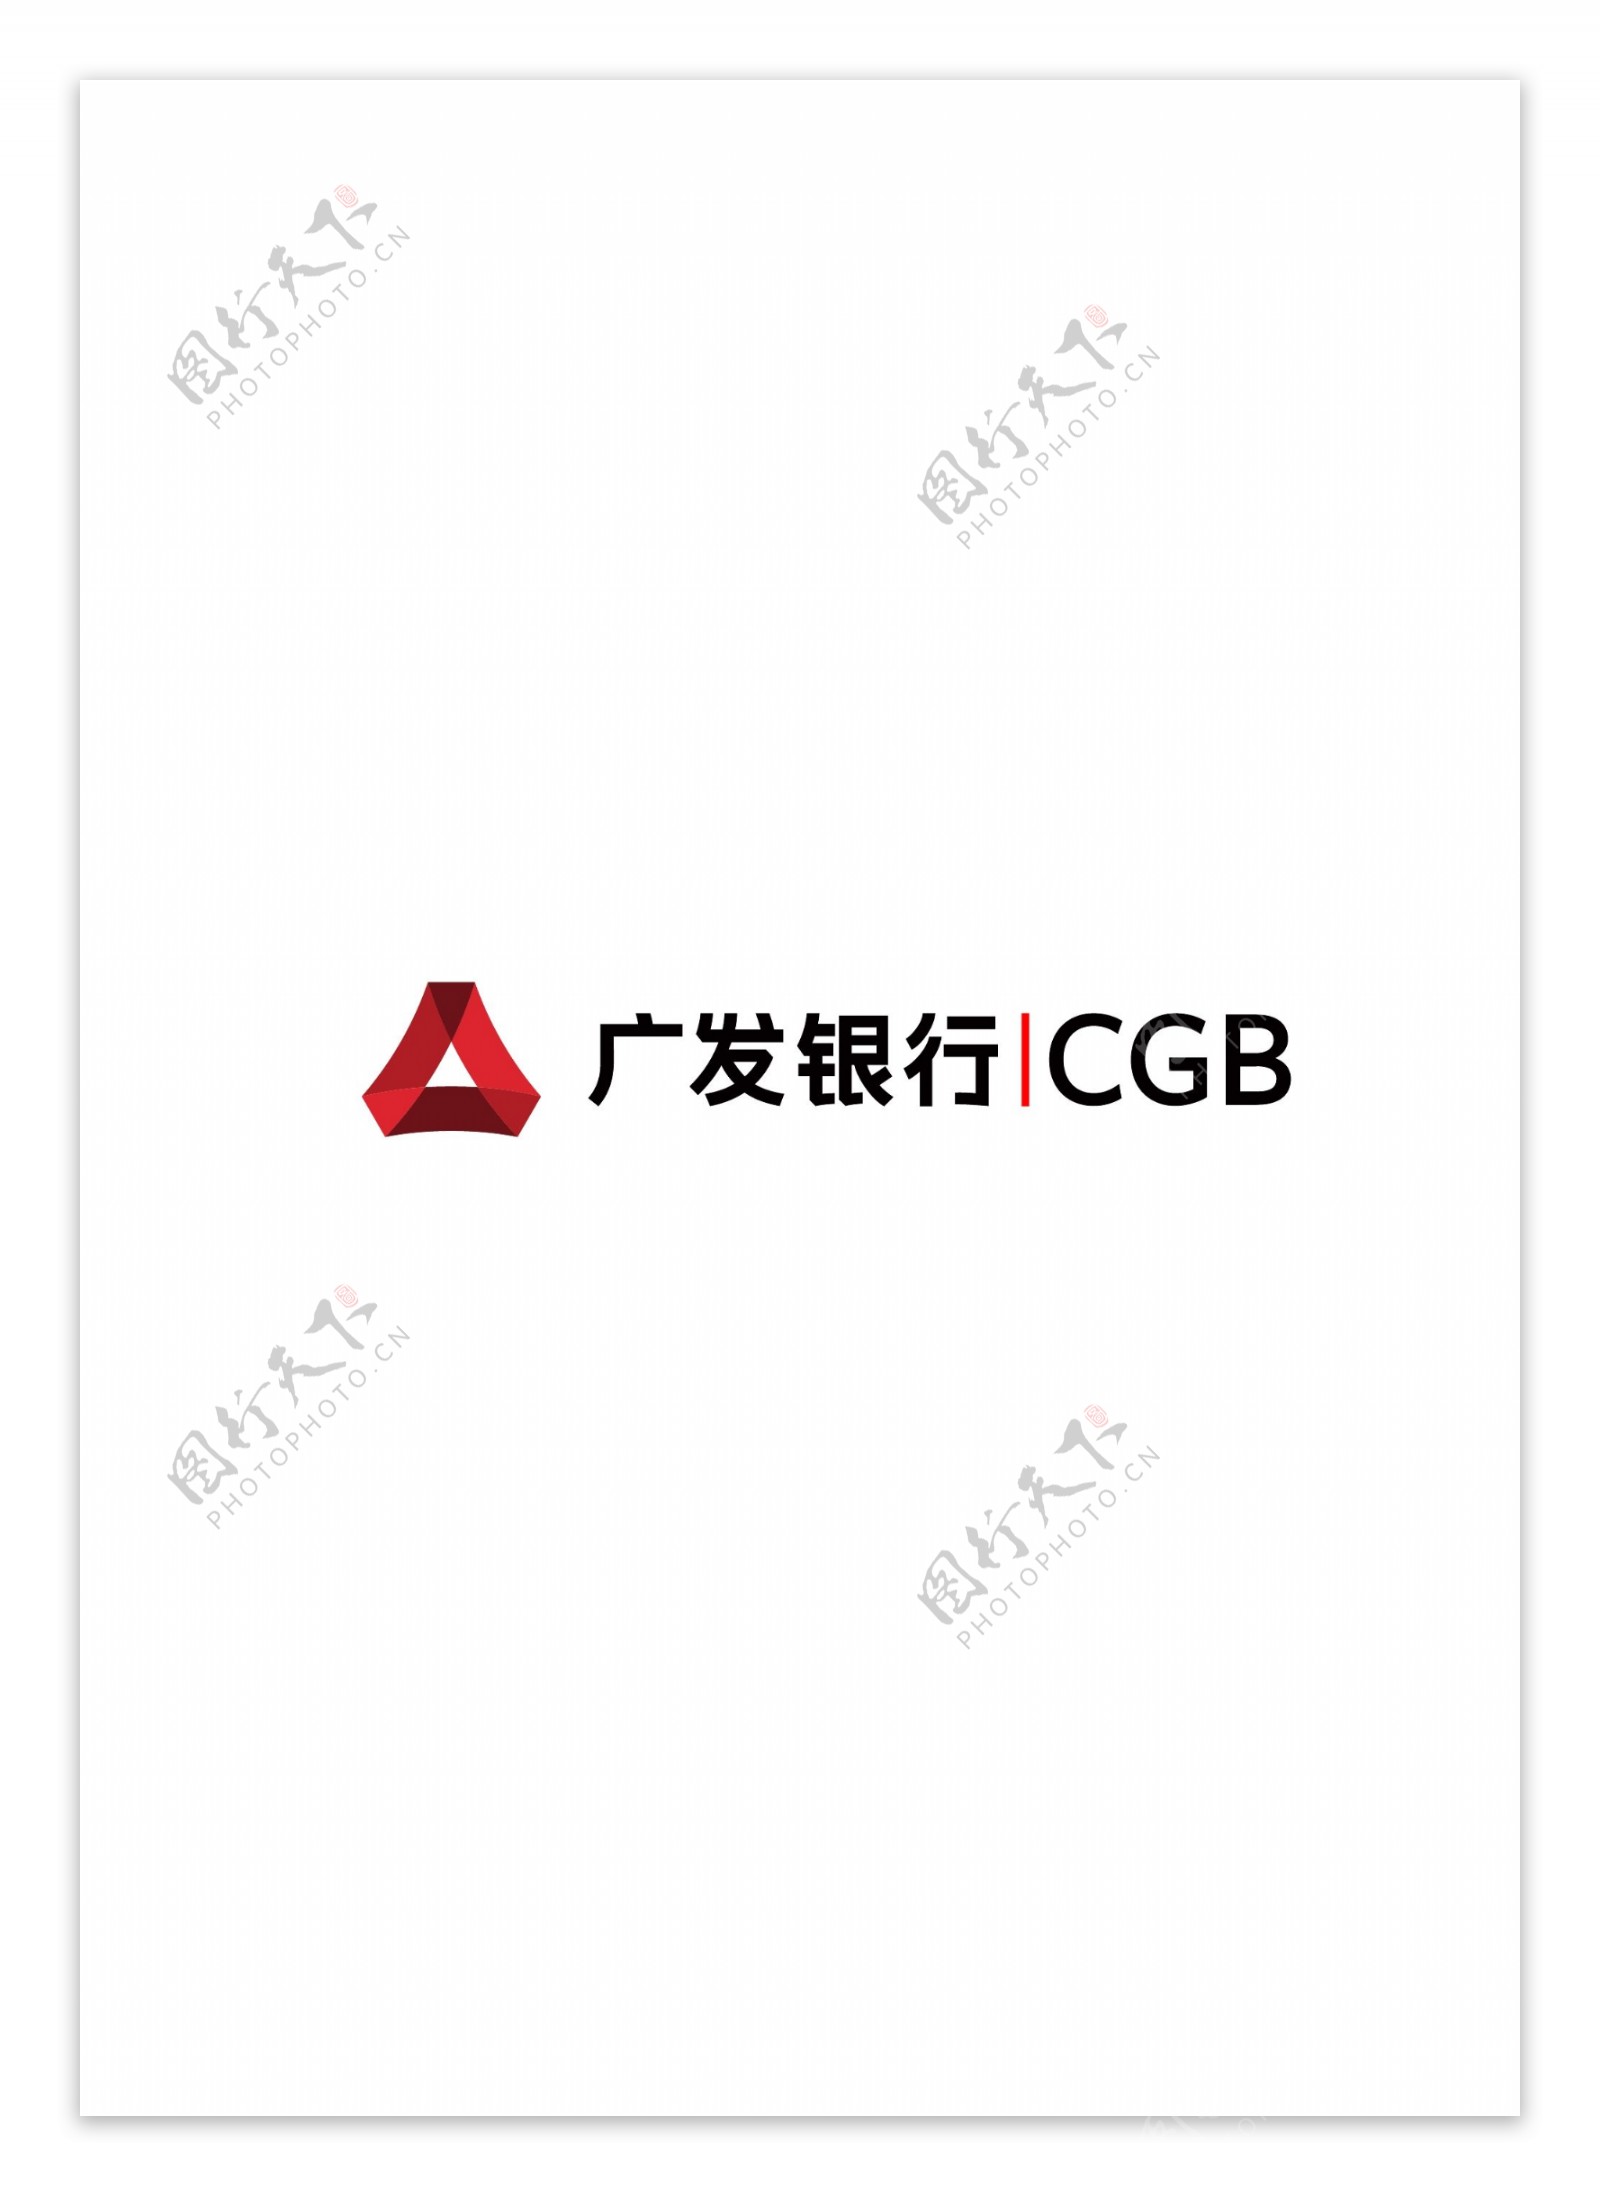 广发银行logo适量